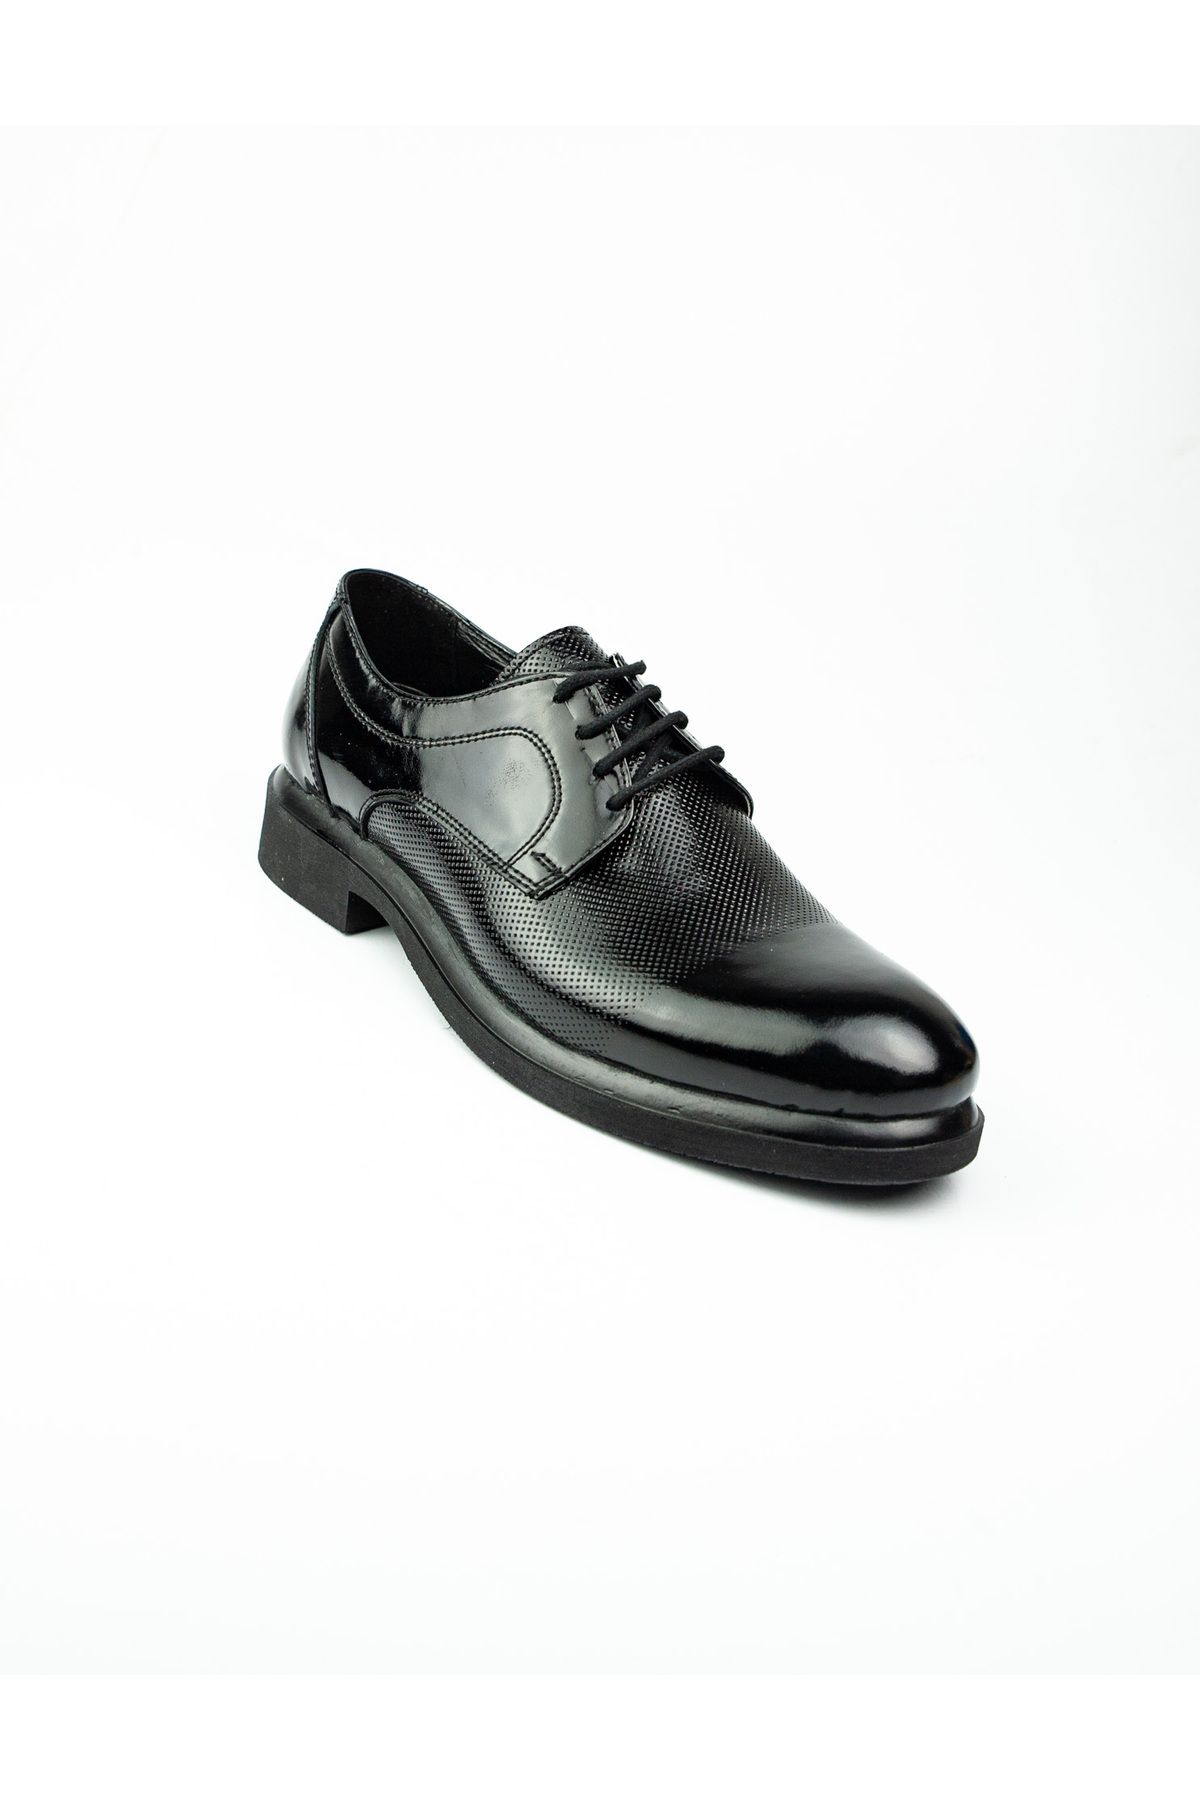 Modesa 230 Siyah Rugan Deri Erkek Klasik Ayakkabı